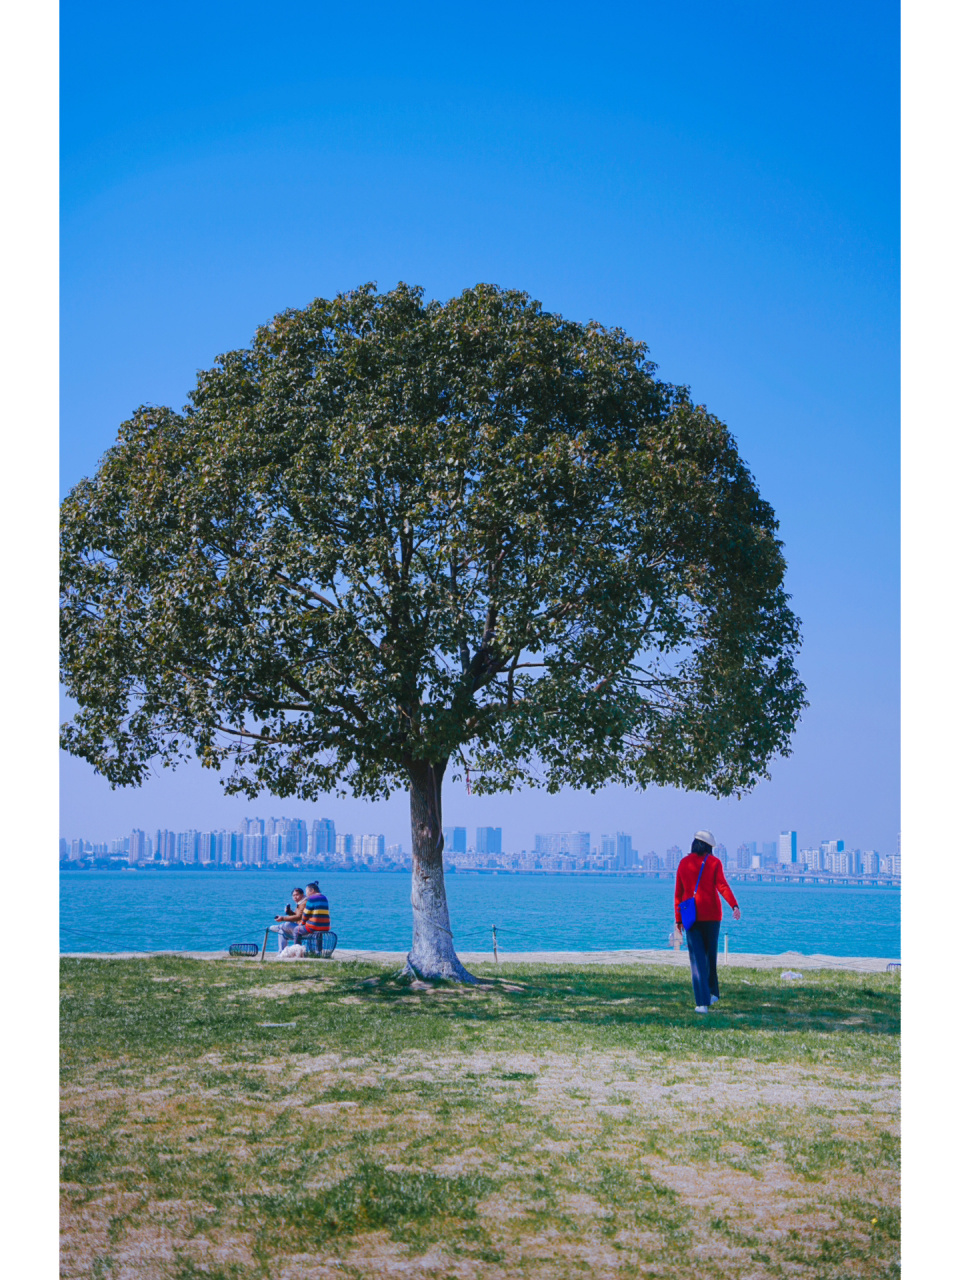 苏州半月湾一棵树图片